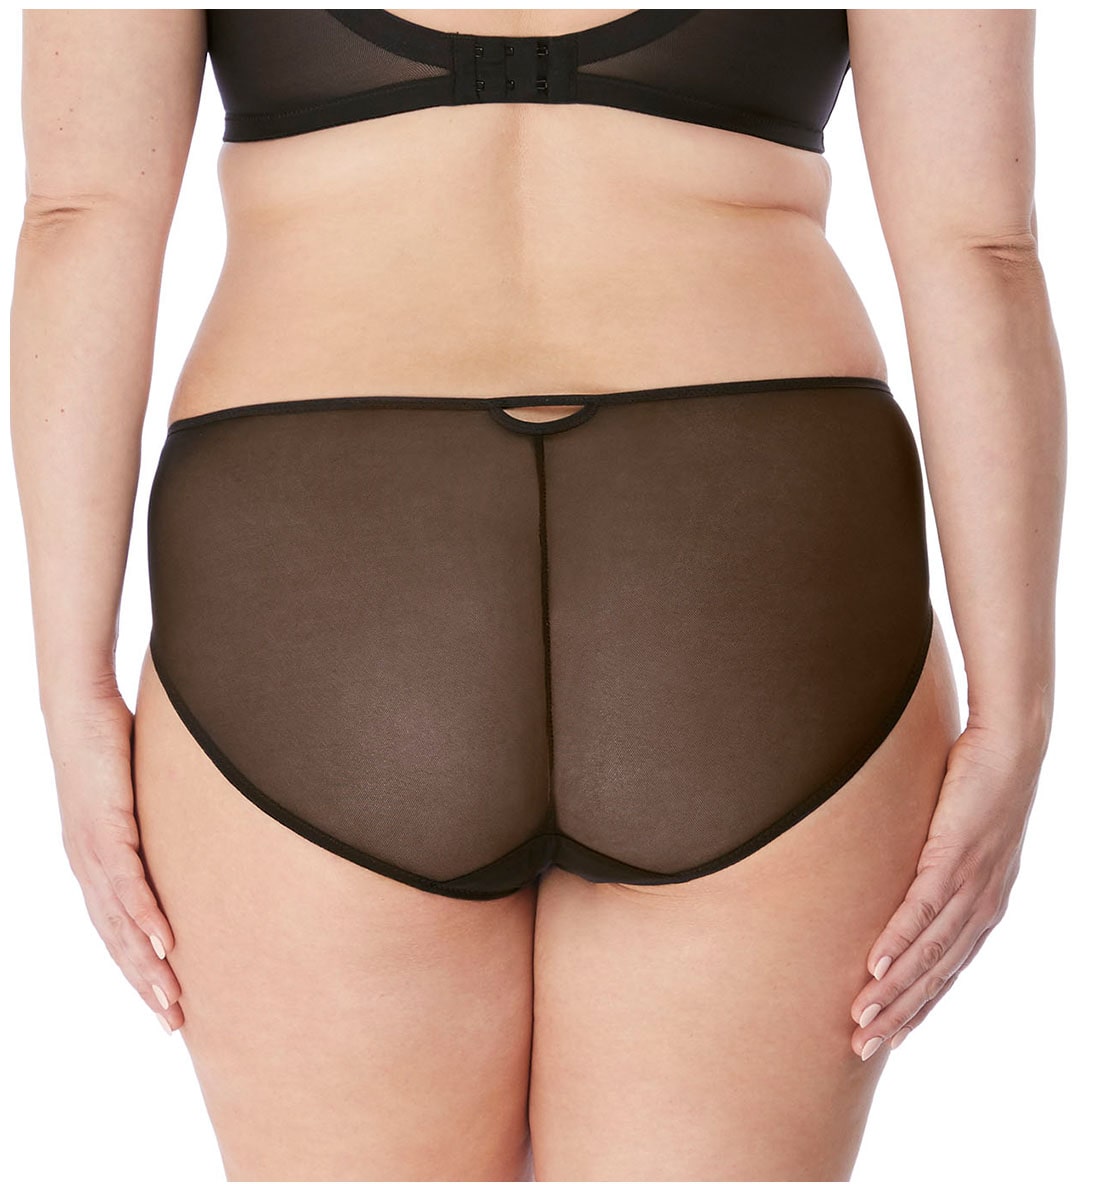 Elomi Sachi Matching Panty Brief (4355),Large,Black - Black,Large